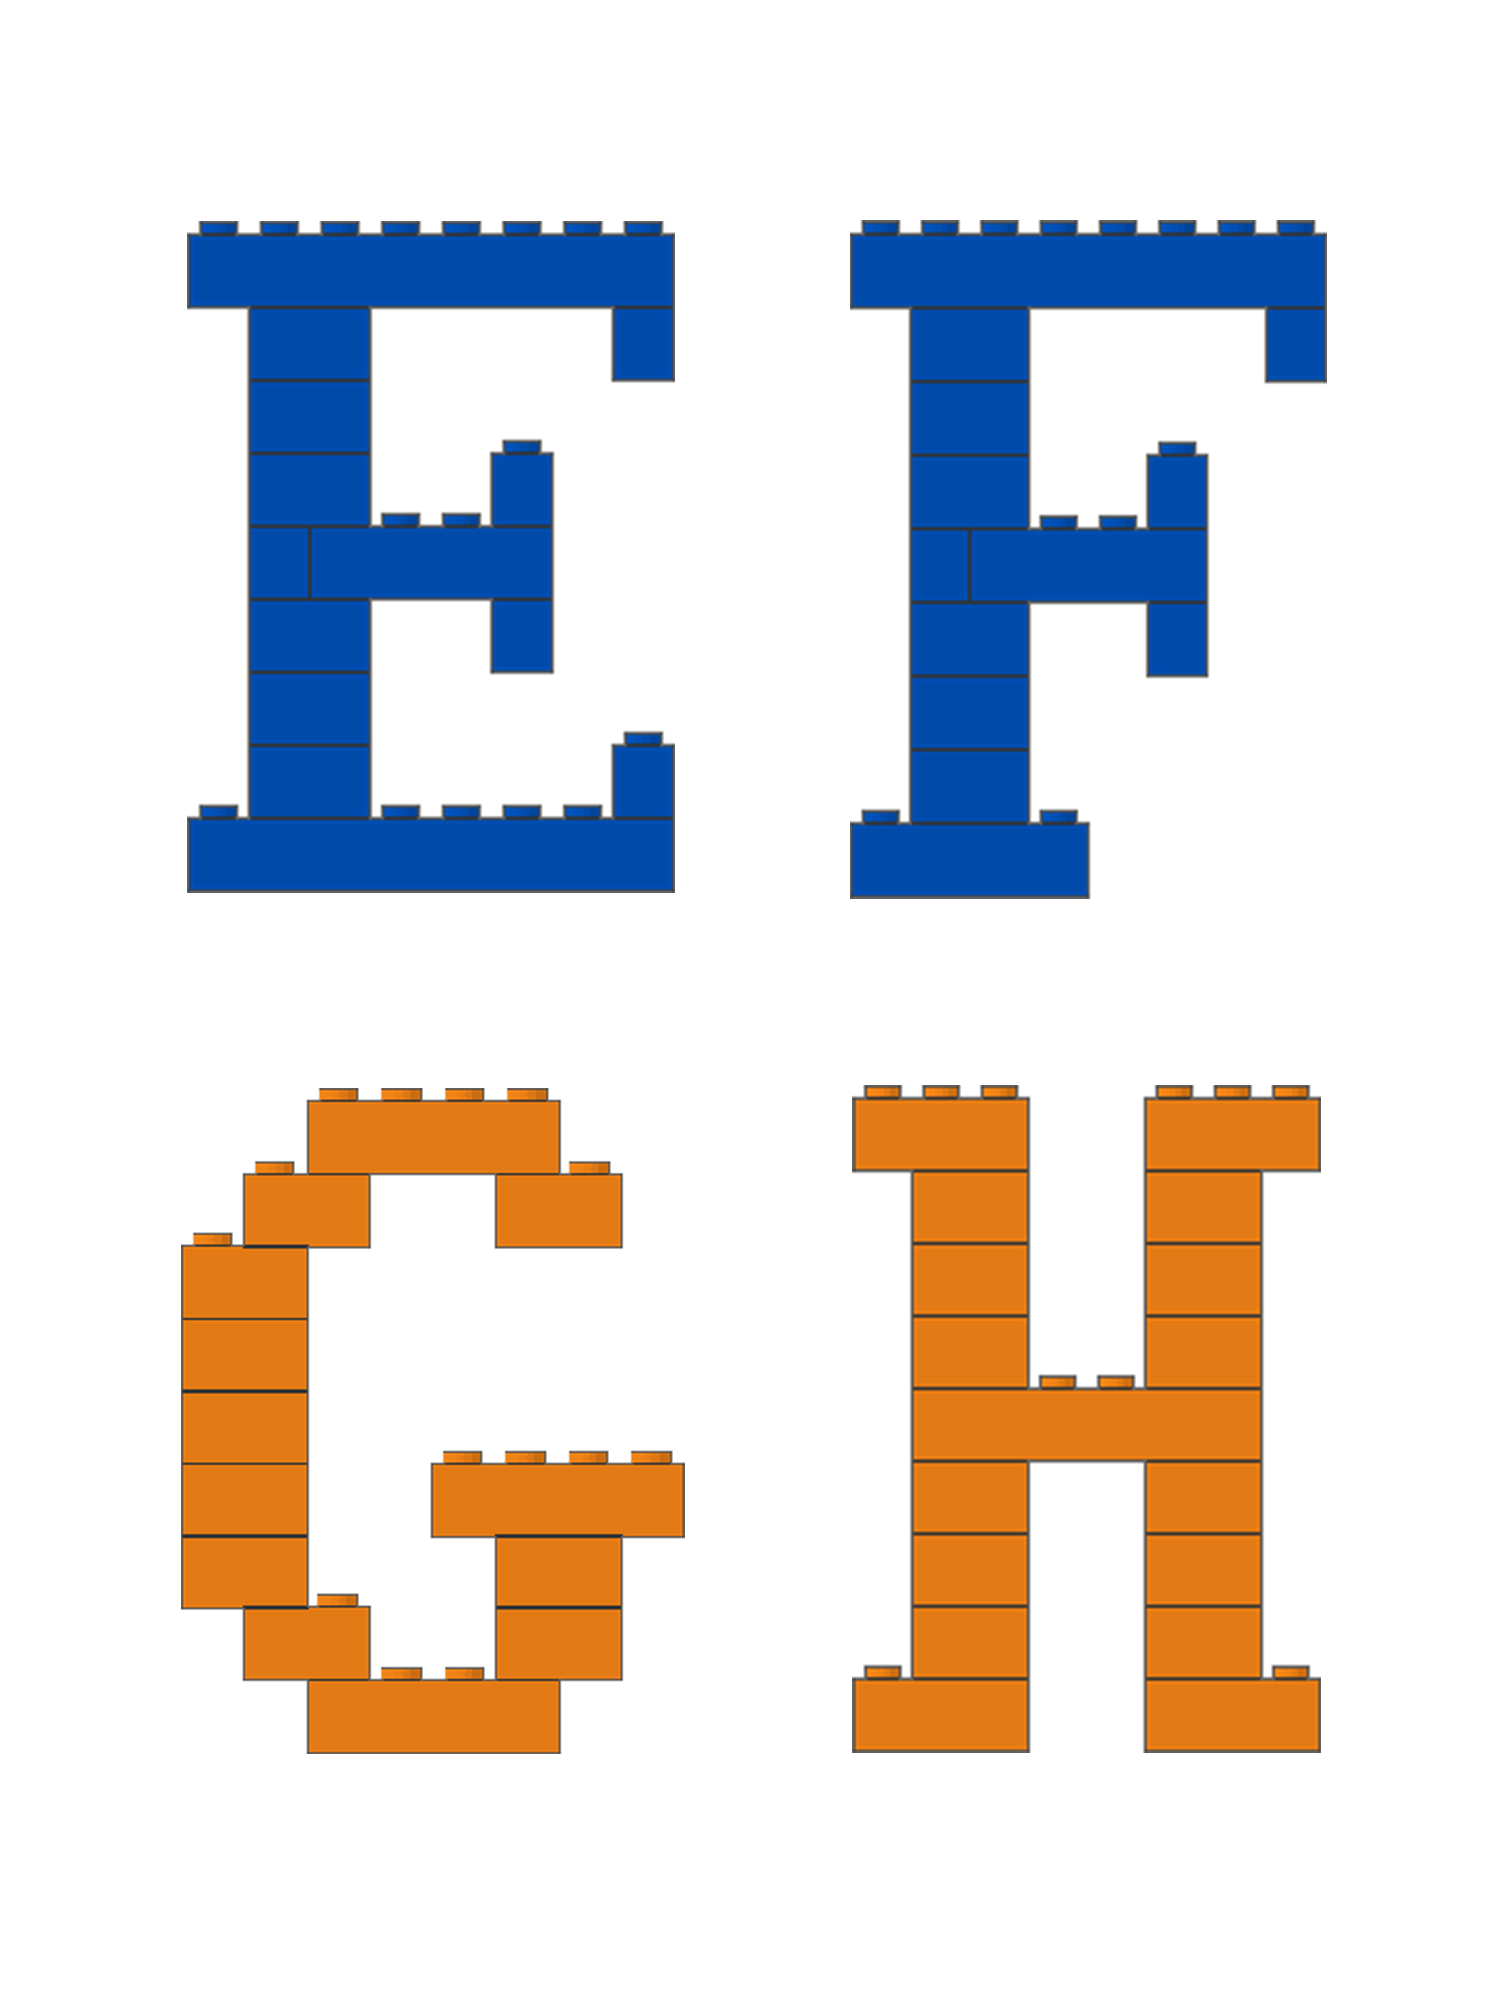 有一种字体叫乐高体用乐高积木拼26个英文字母